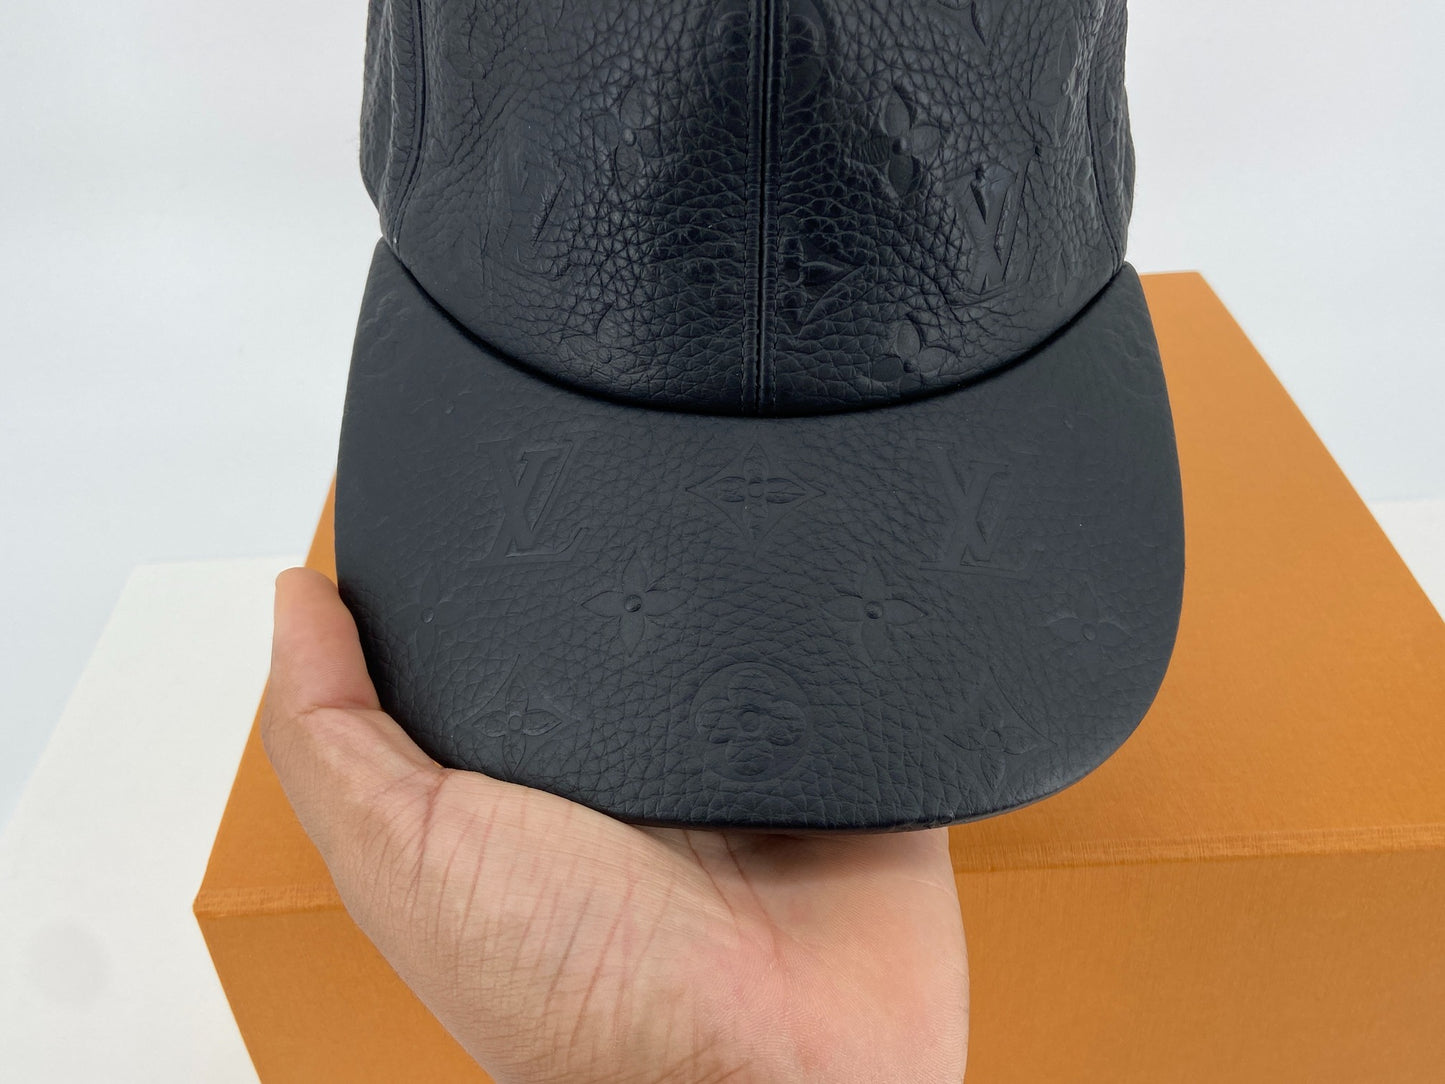 Louis Vuitton 1.1 Cap Black Empreinte Leather incl. Box